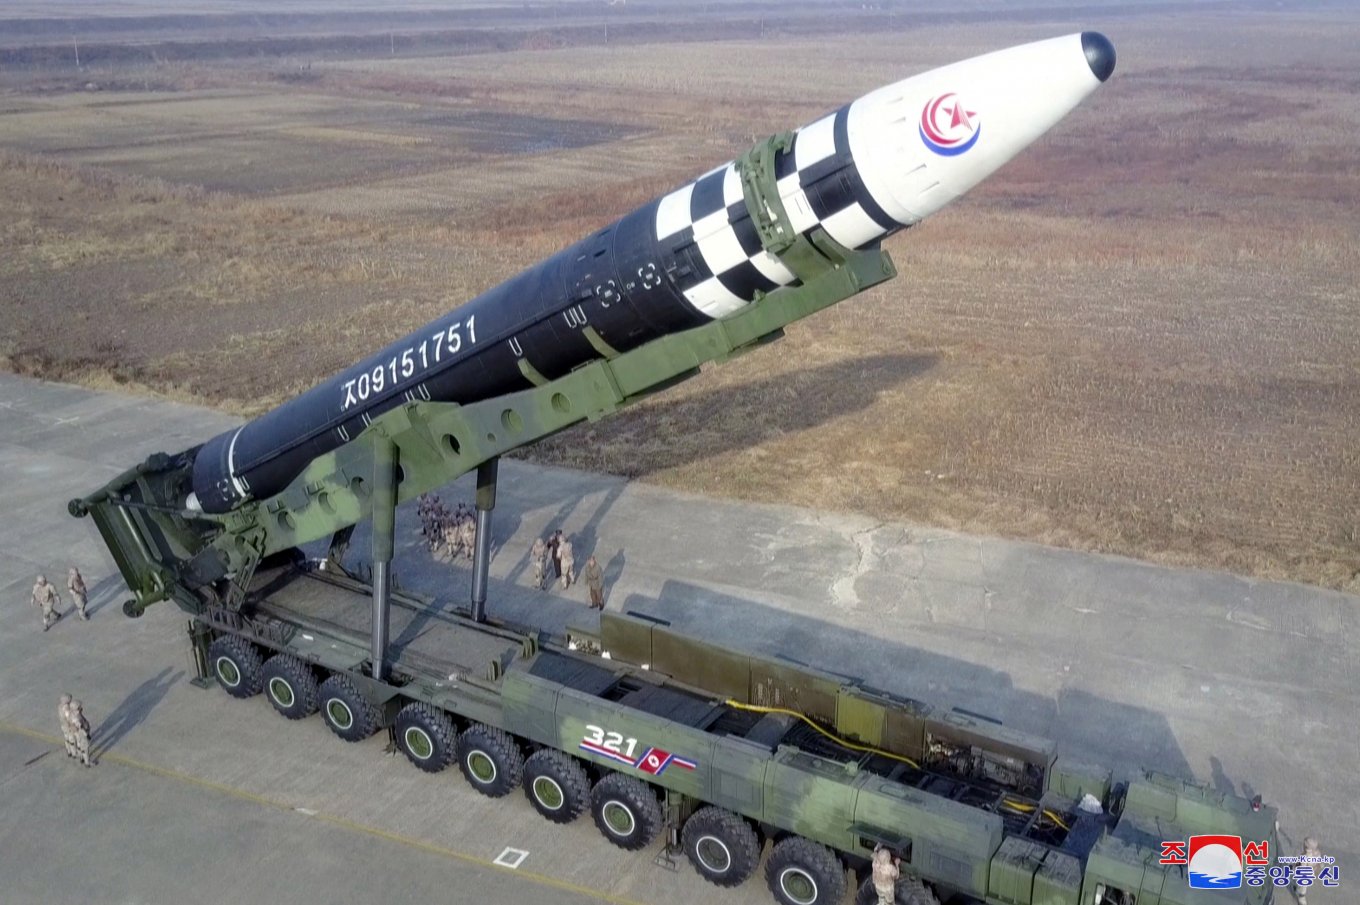 Hwasong-17 missile